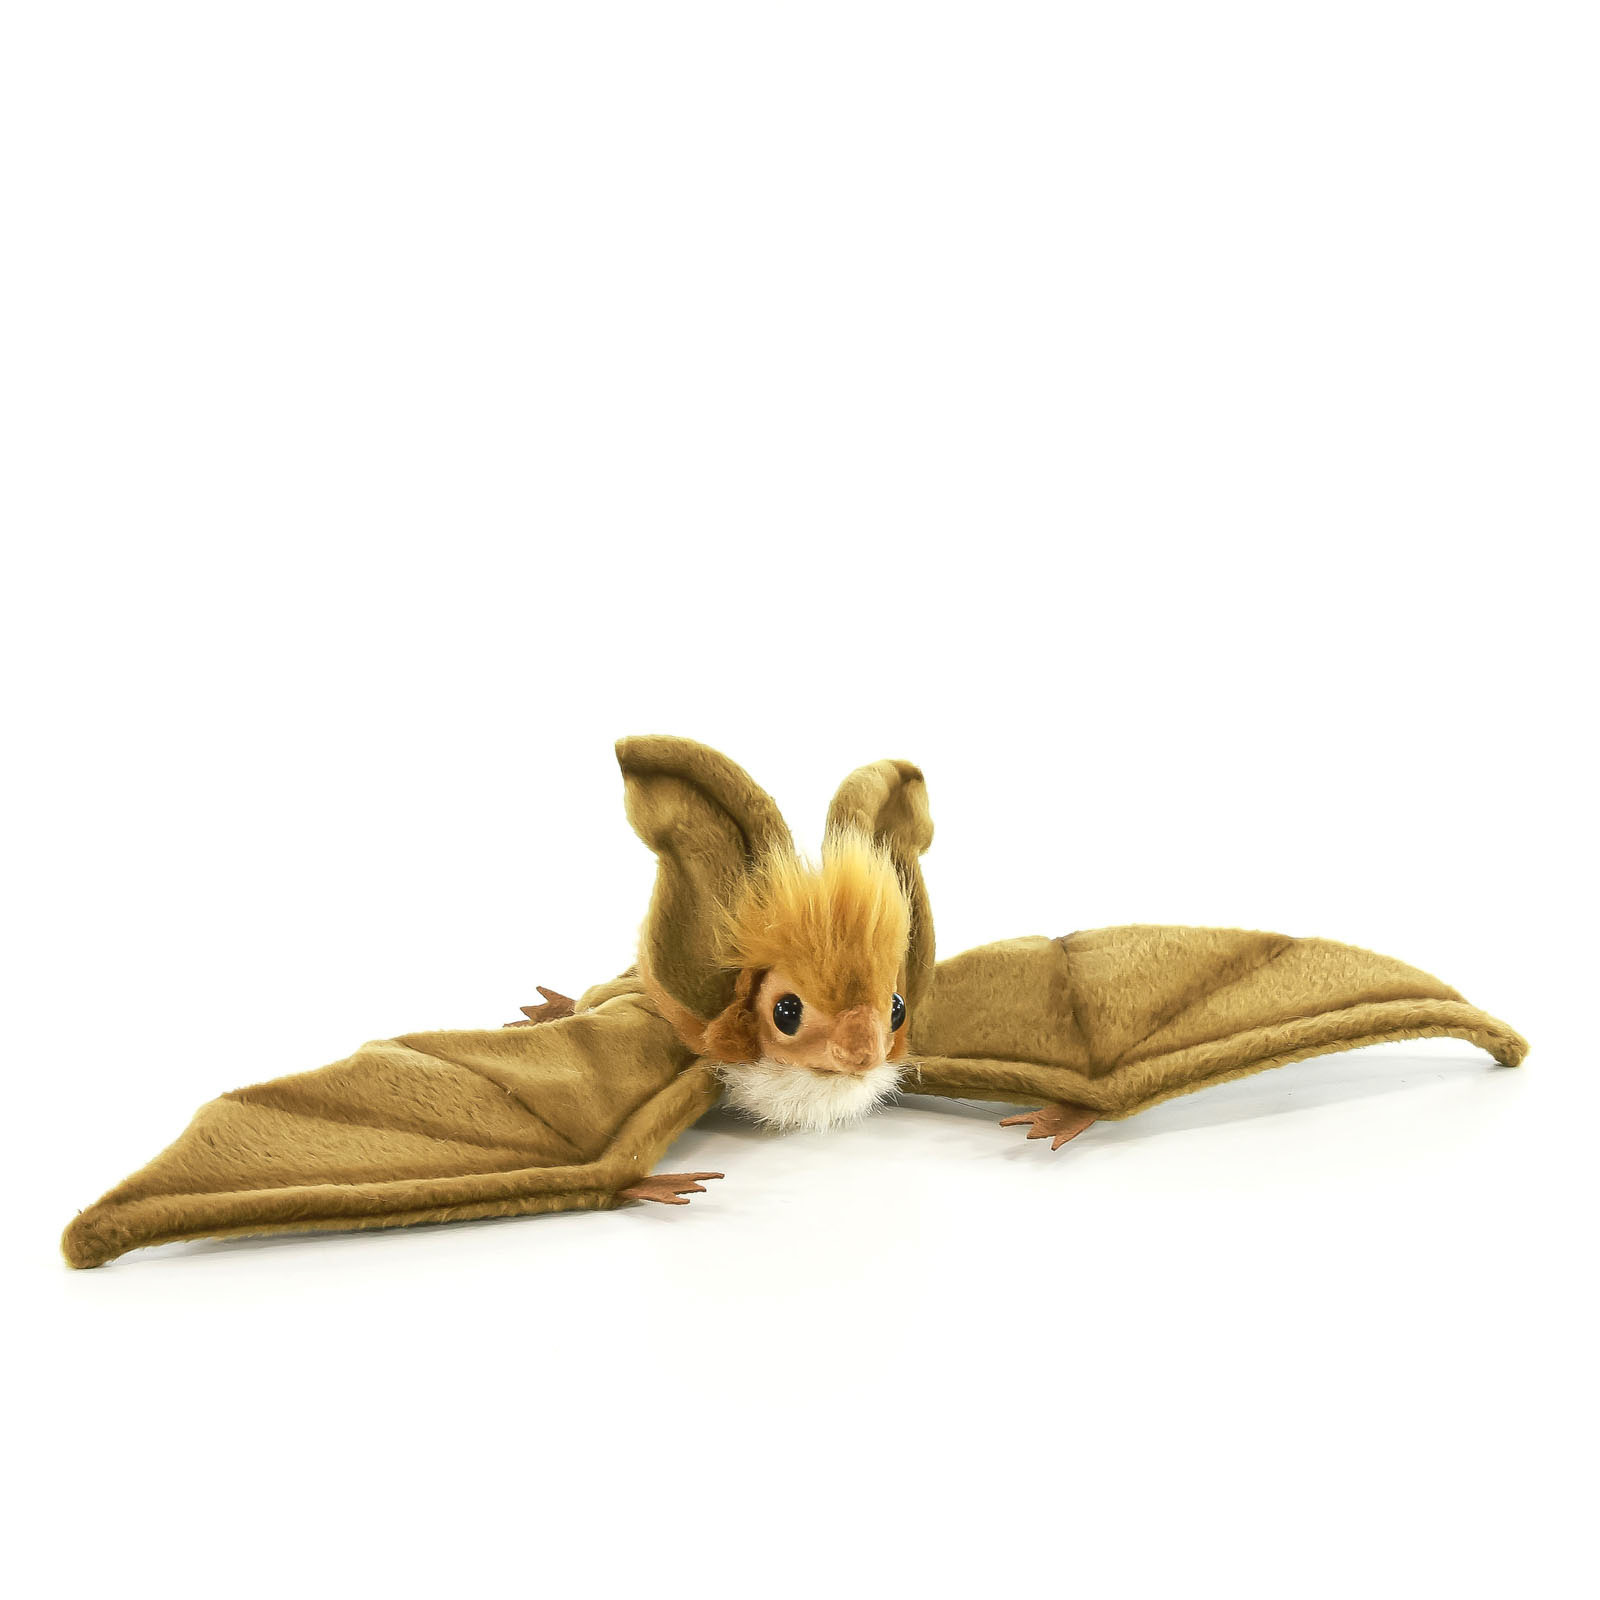 Реалистичная мягкая игрушка Hansa Creation Коричневая летучая мышь парящая, 37 см мягкая игрушка мышь зои